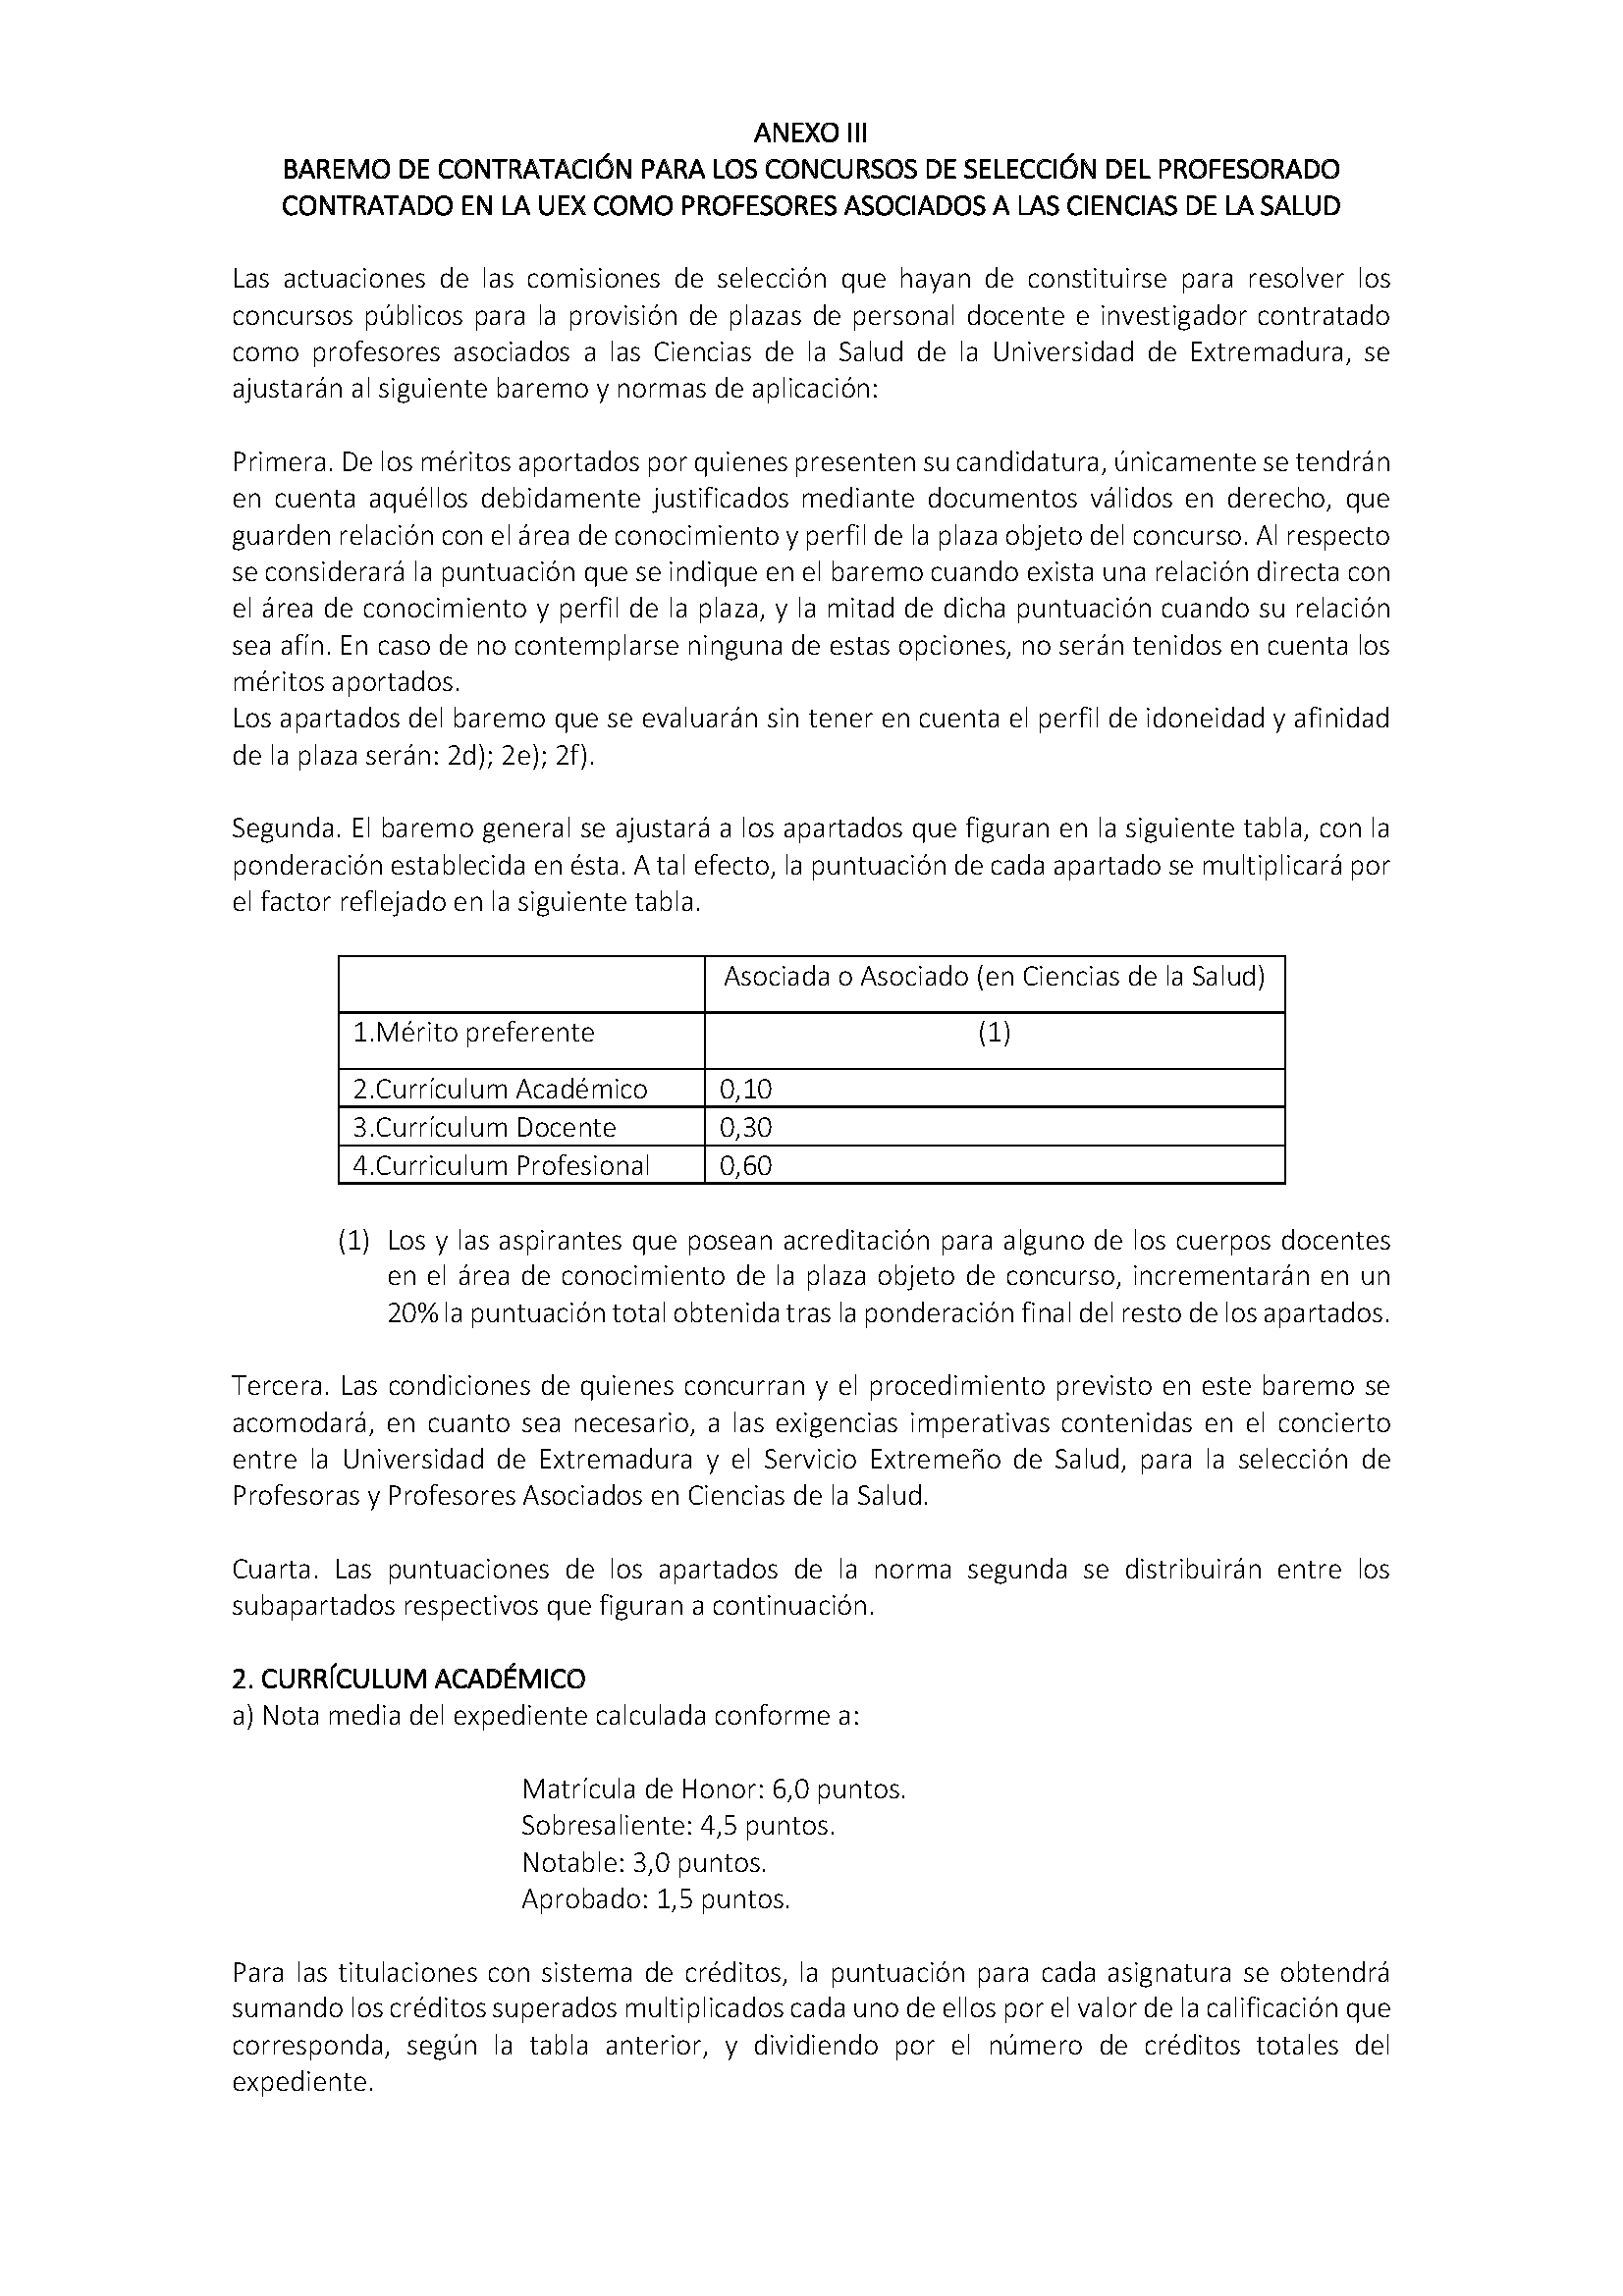 NORMATIVA DE CONTRATACION DEL PROFESORADO EN REGIMEN LABORAL DE LA UNIVERSIDAD DE EXTREMADURA (2022) Pag 24